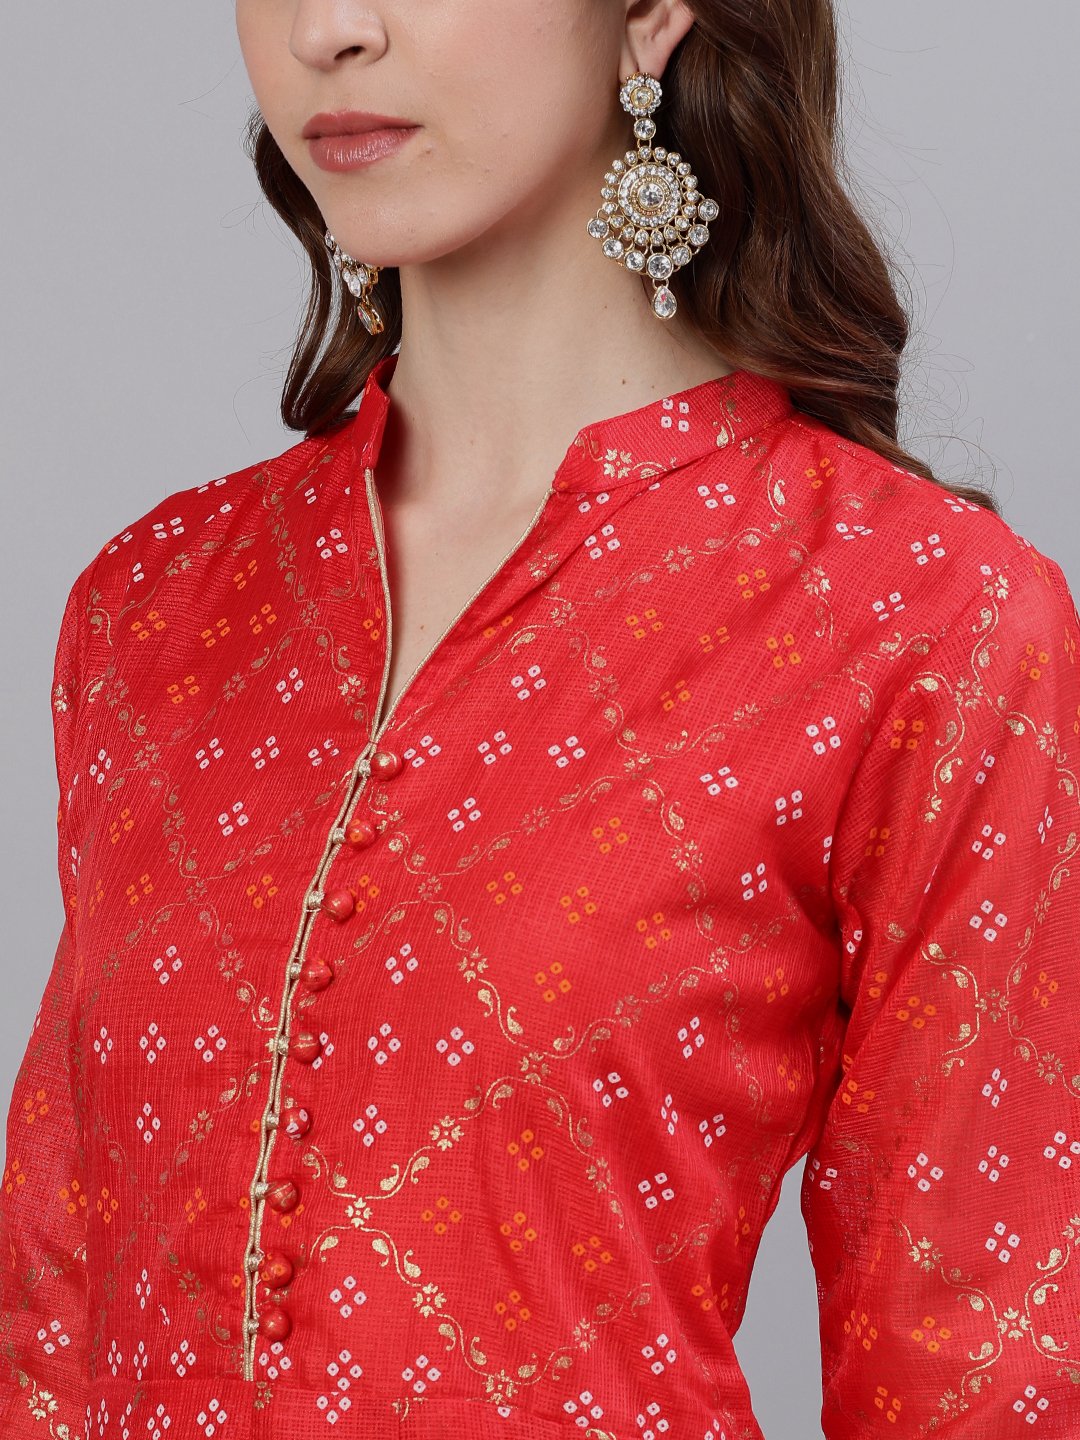 Ishin Women's Cotton Red Bandhani Printed Anarkali Dress